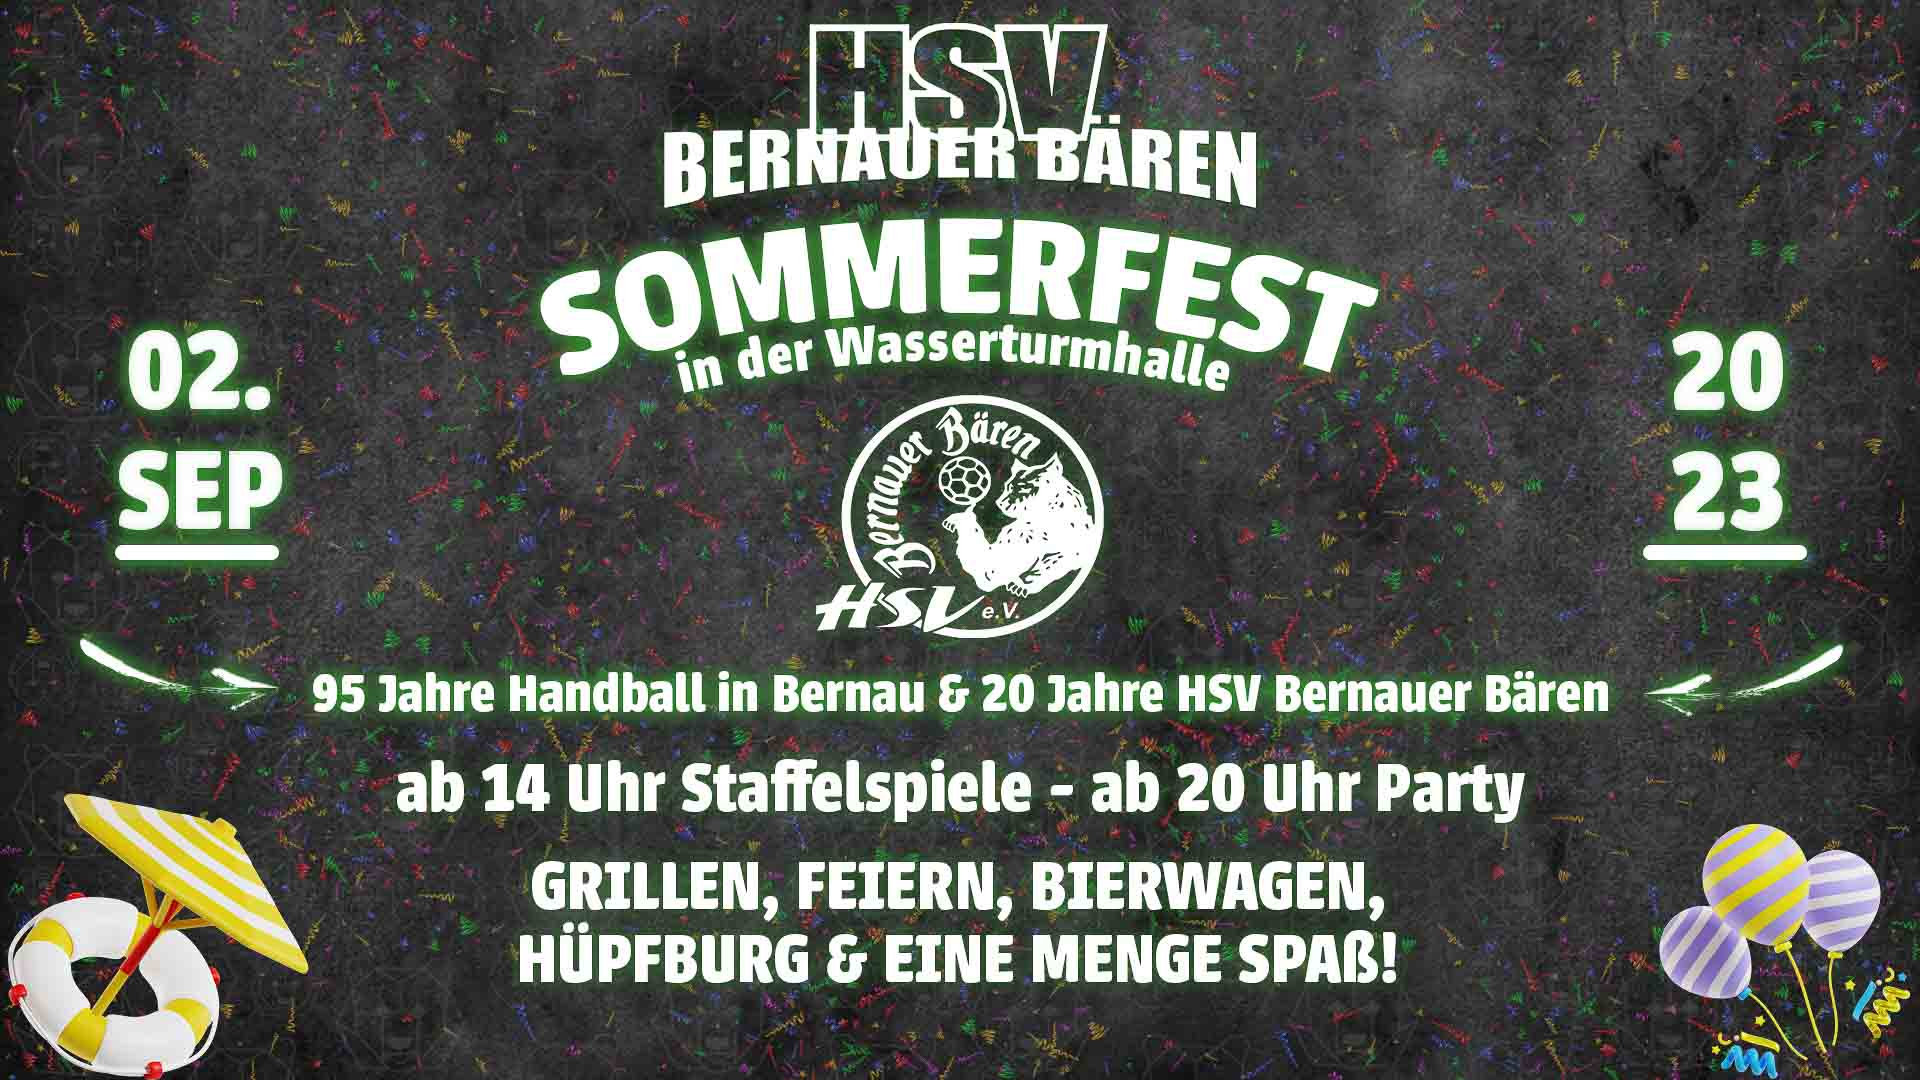 Einladung zum Sommerfest bei den HSV Bernauer Bären am 02. September